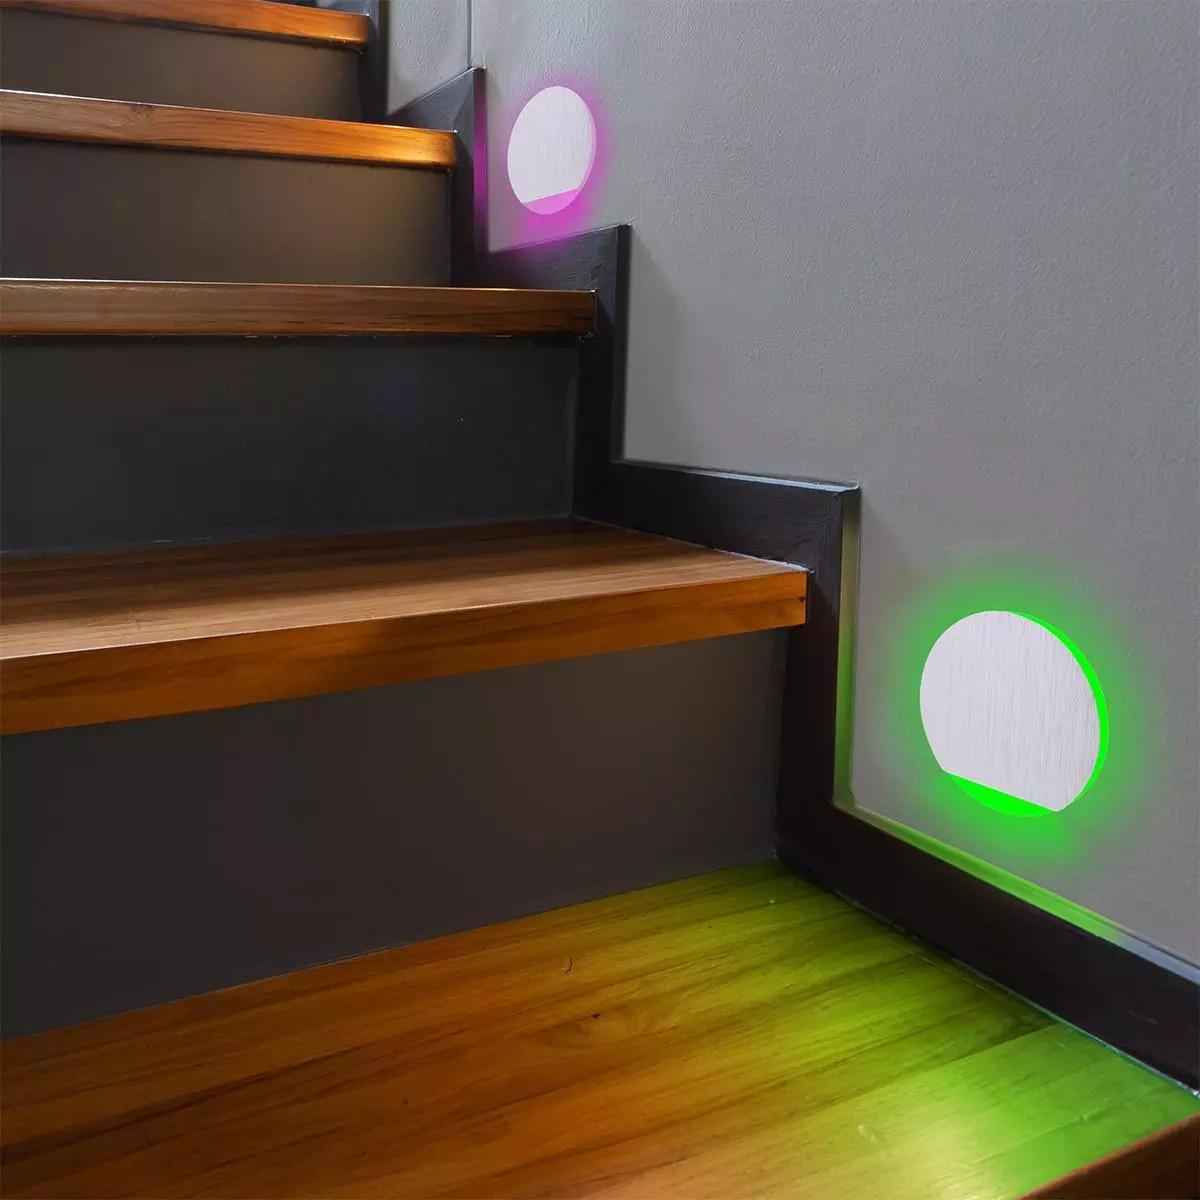 LED Treppenleuchte IP44 Alu-gebürstet - Lichtfarbe: RGB Warmweiß 3W - Lichtaustritt: Orbis